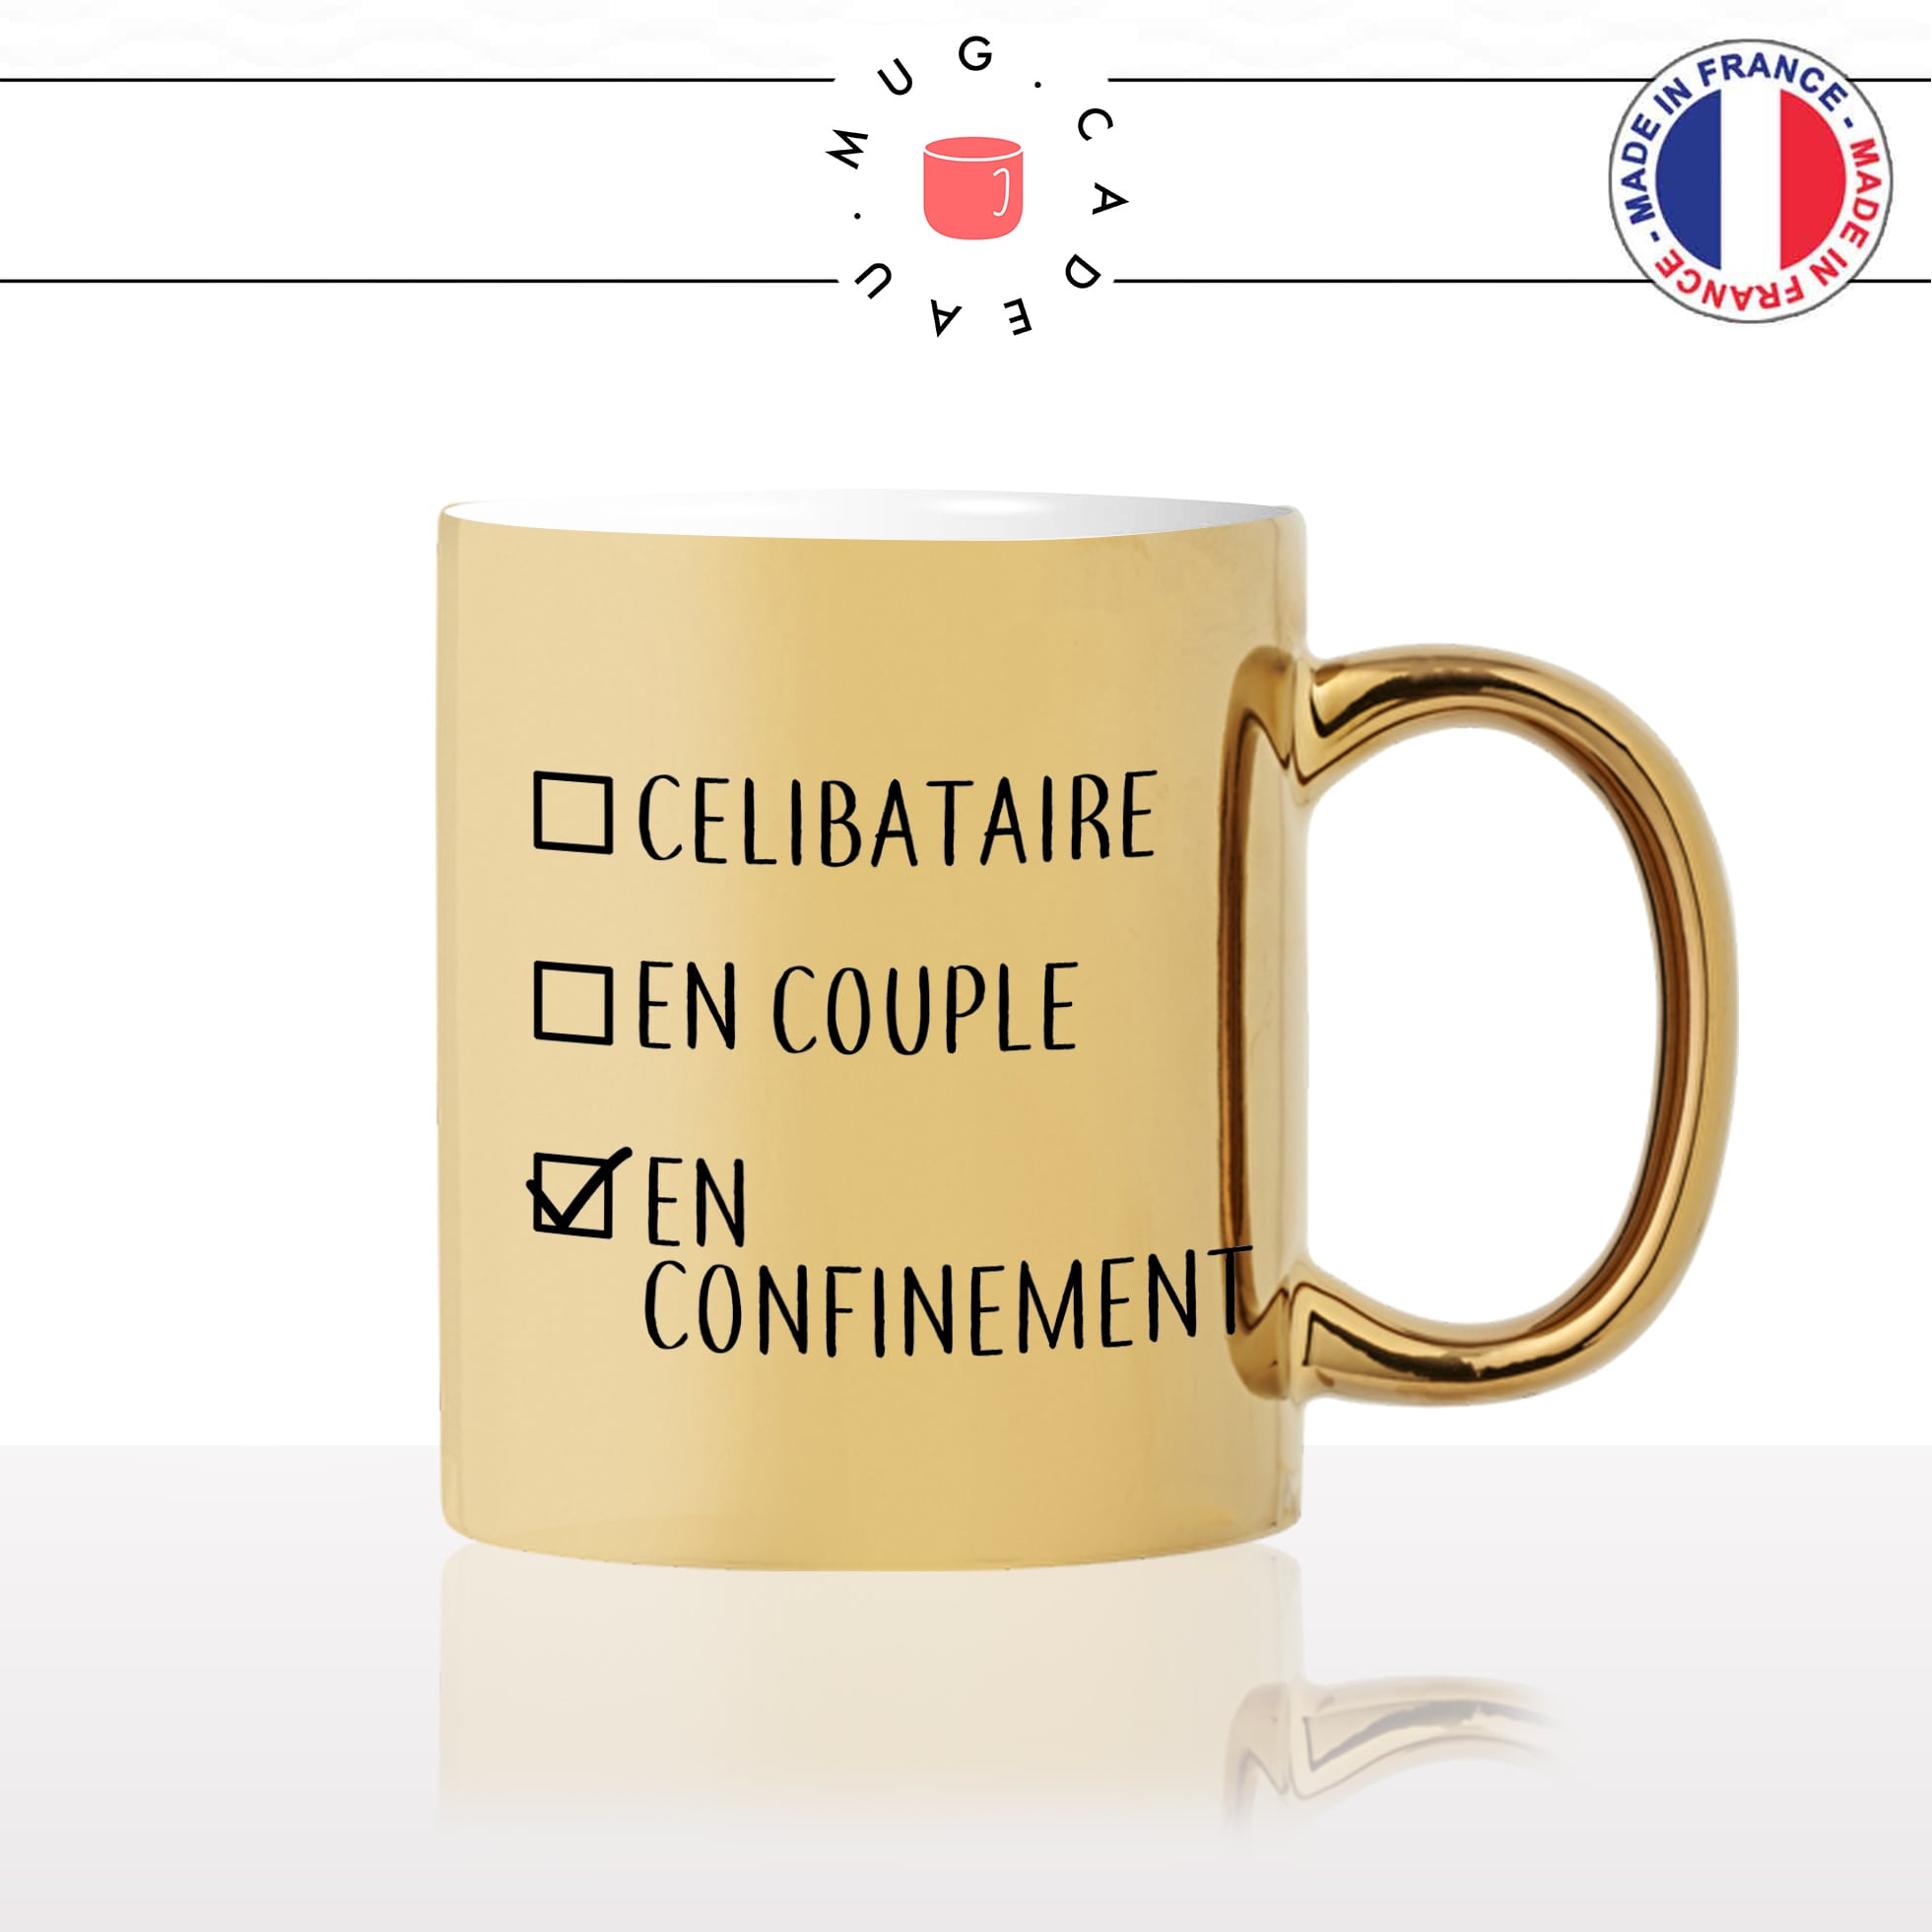 mug-tasse-doré-or-gold-célibataire-couple-confinement-confiné-covid-drole-cool-humour-fun-idée-cadeau-personnalisé-café-thé2-min